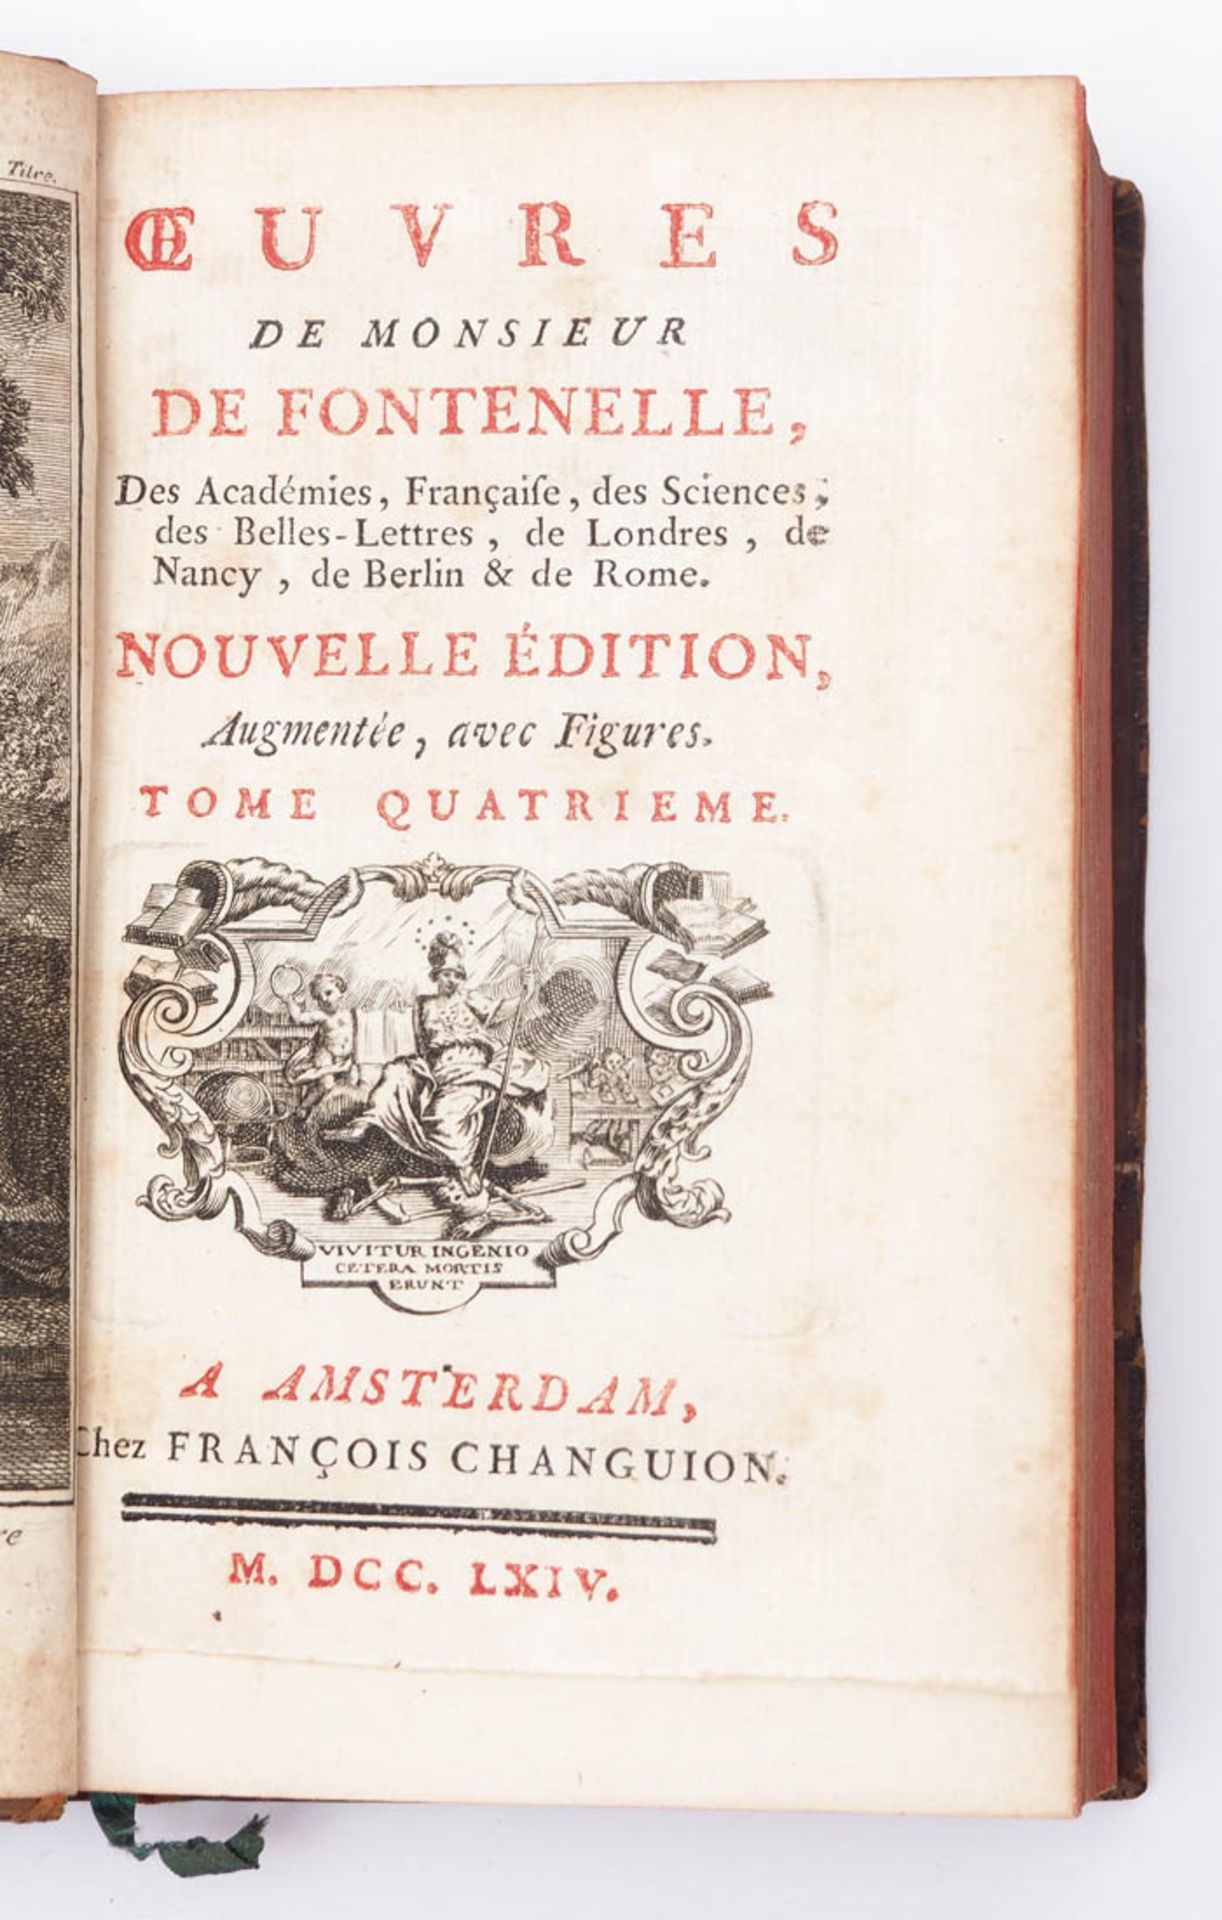 B. Fontenelle: Oeuvres, Band 4 Amsterdam, 1764. Titelkupfer. Rot gefärbter Schnitt, Halbledereinband - Image 2 of 3